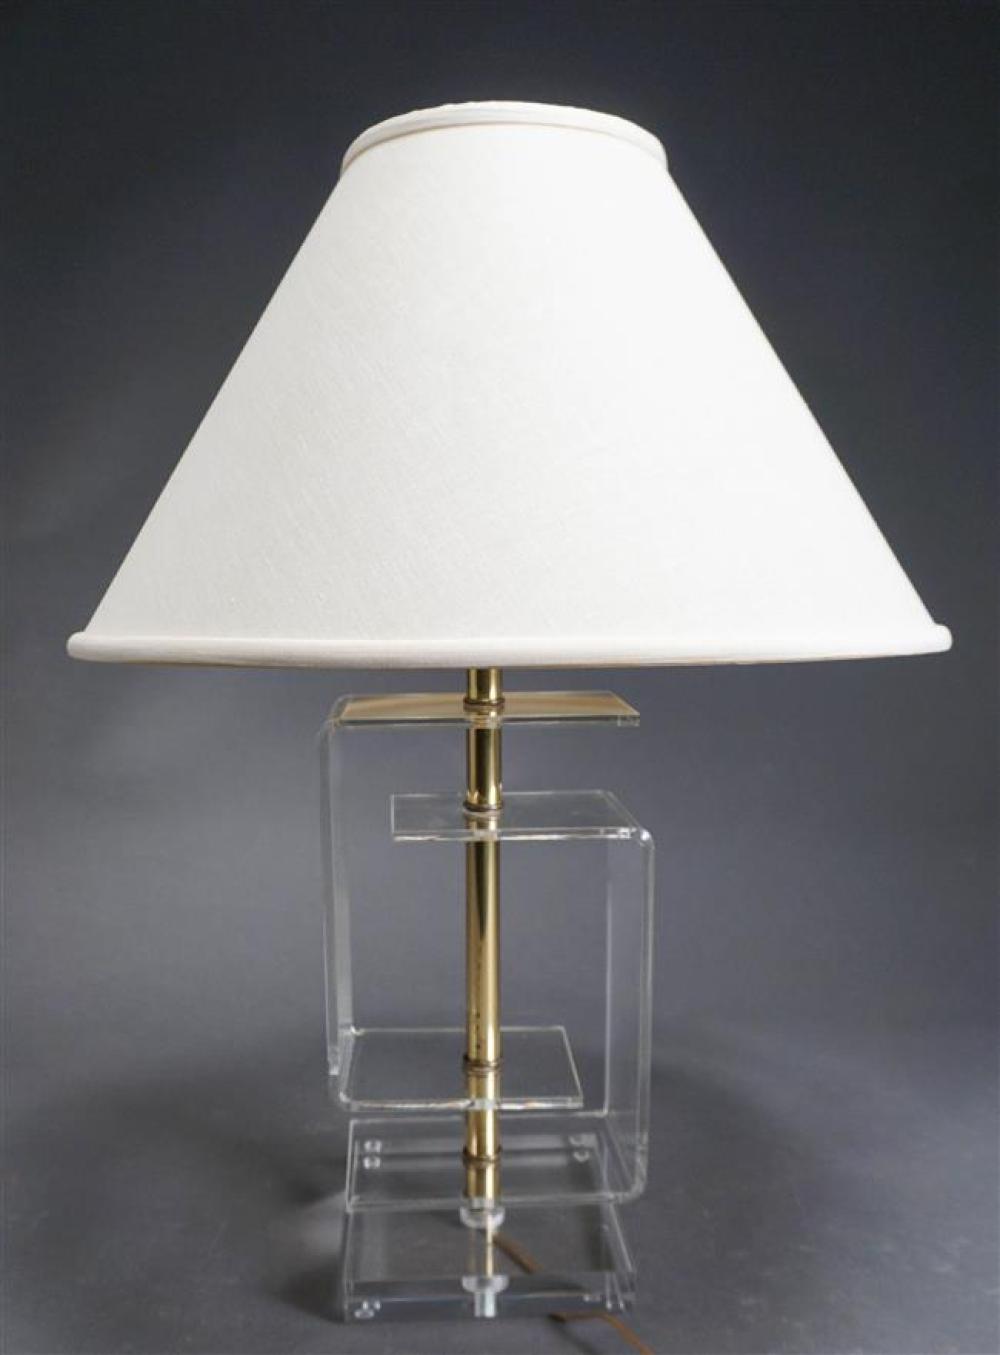 CONTEMPORARY ACRYLIC TABLE LAMP  32317e